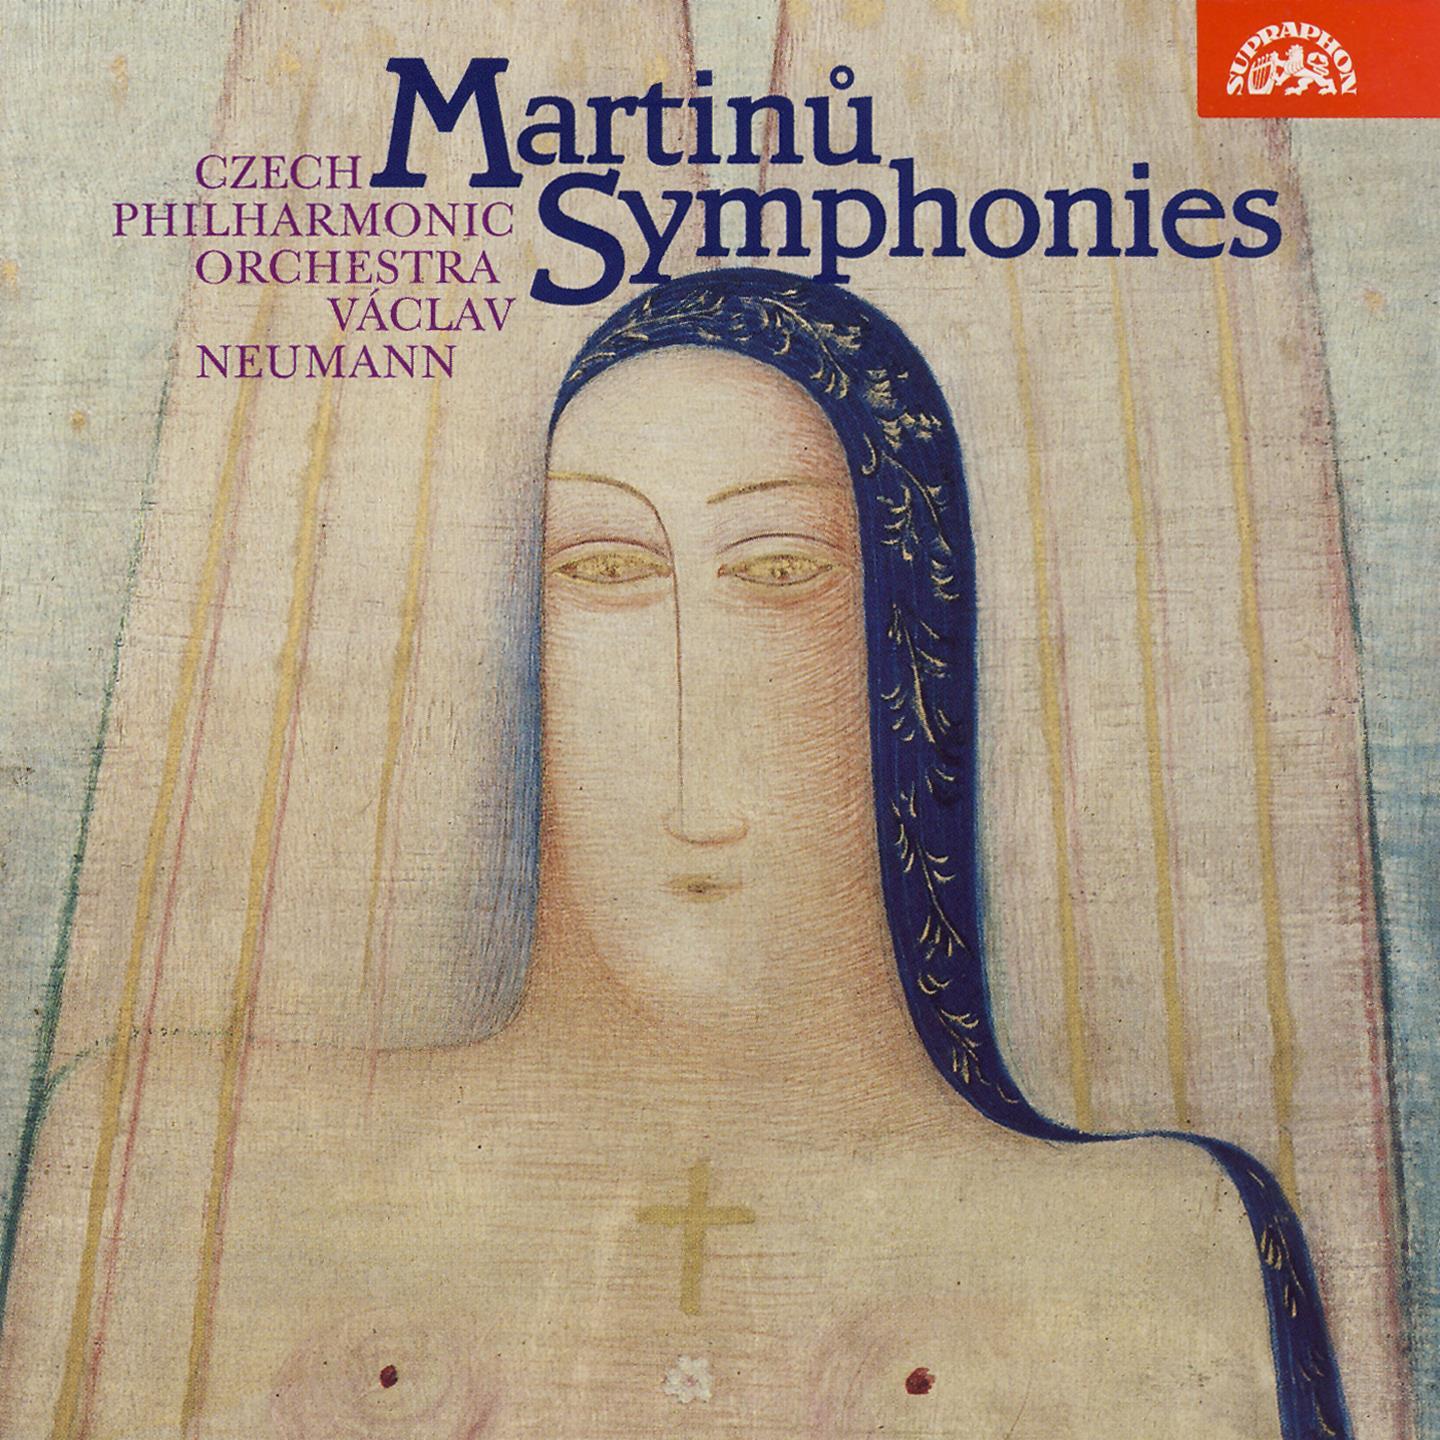 Symphony No. 6, H. 343 "Fantaisies symphoniques": II. Poco allegro